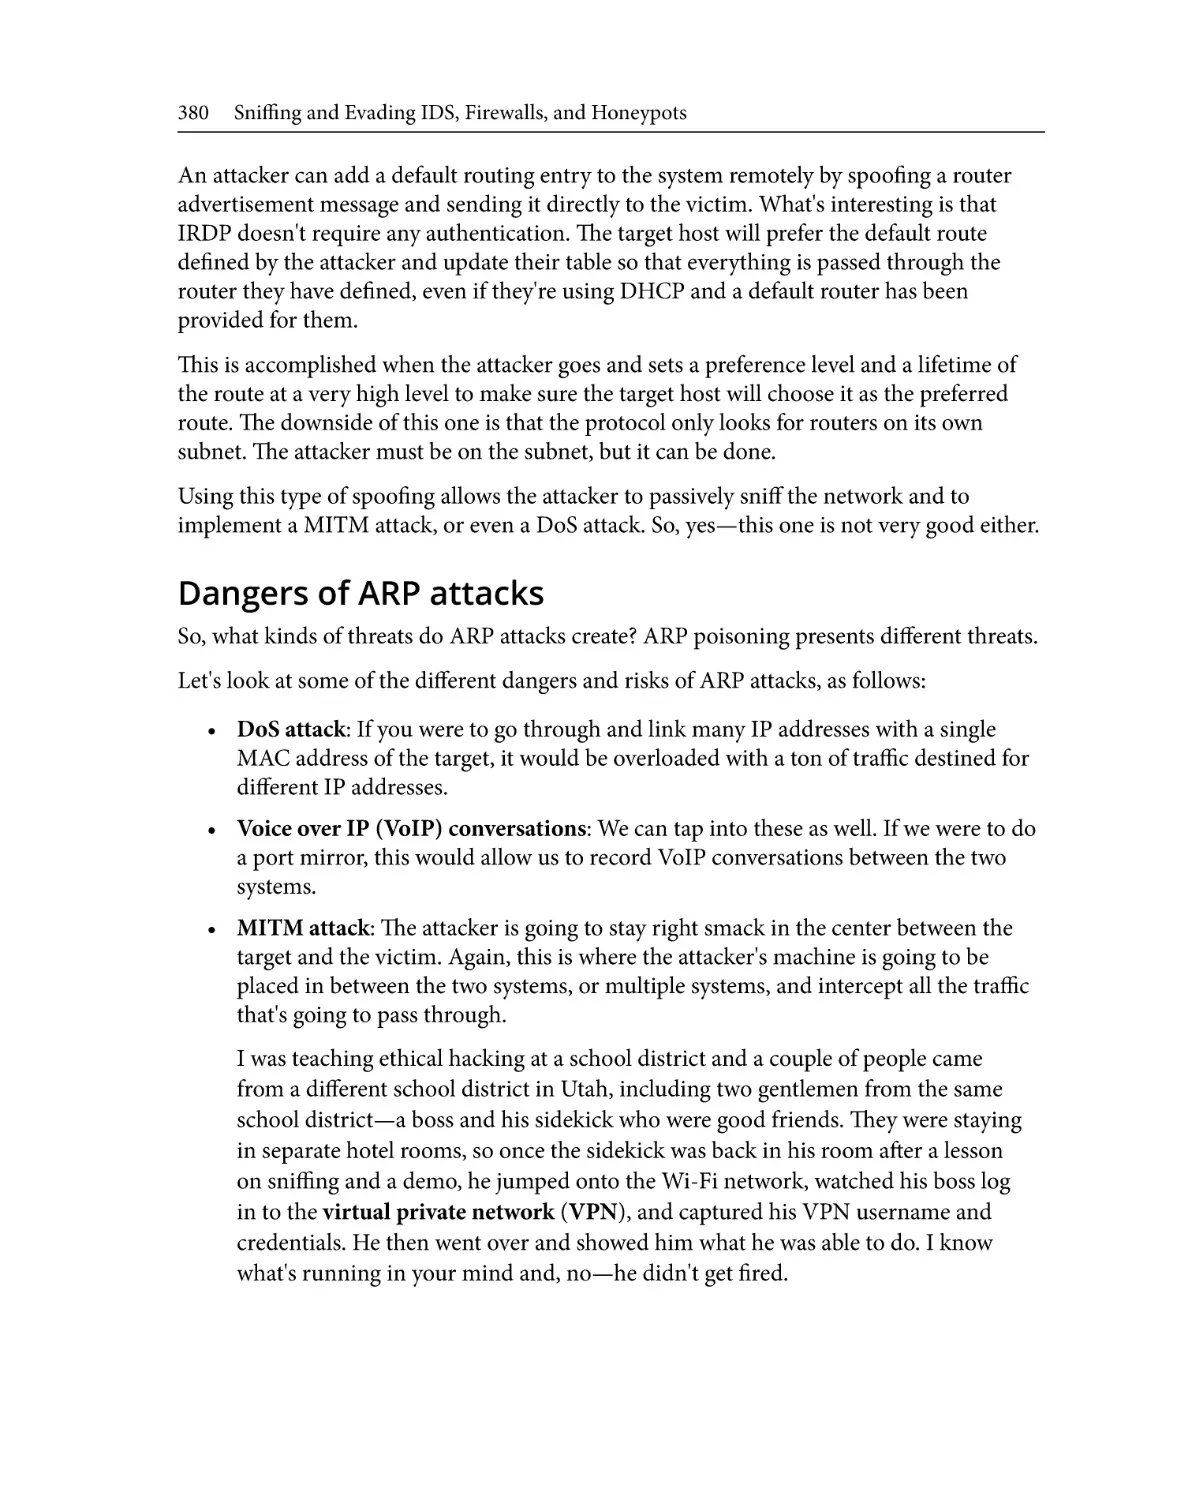 Dangers of ARP attacks